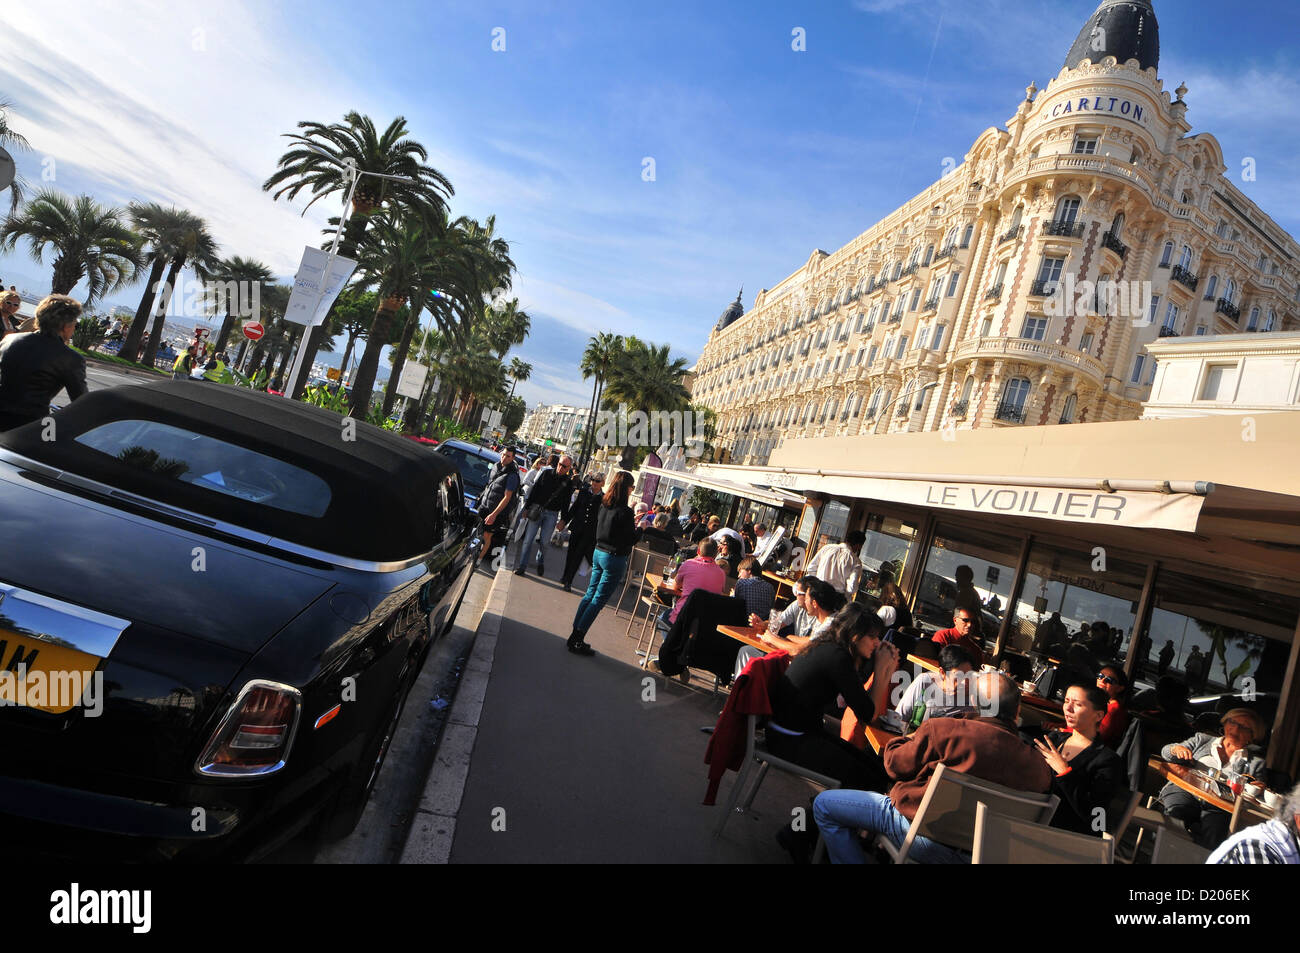 Les gens dans les cafés sur la Croisette, Cannes, Cote d'Azur, France, Europe du Sud Banque D'Images